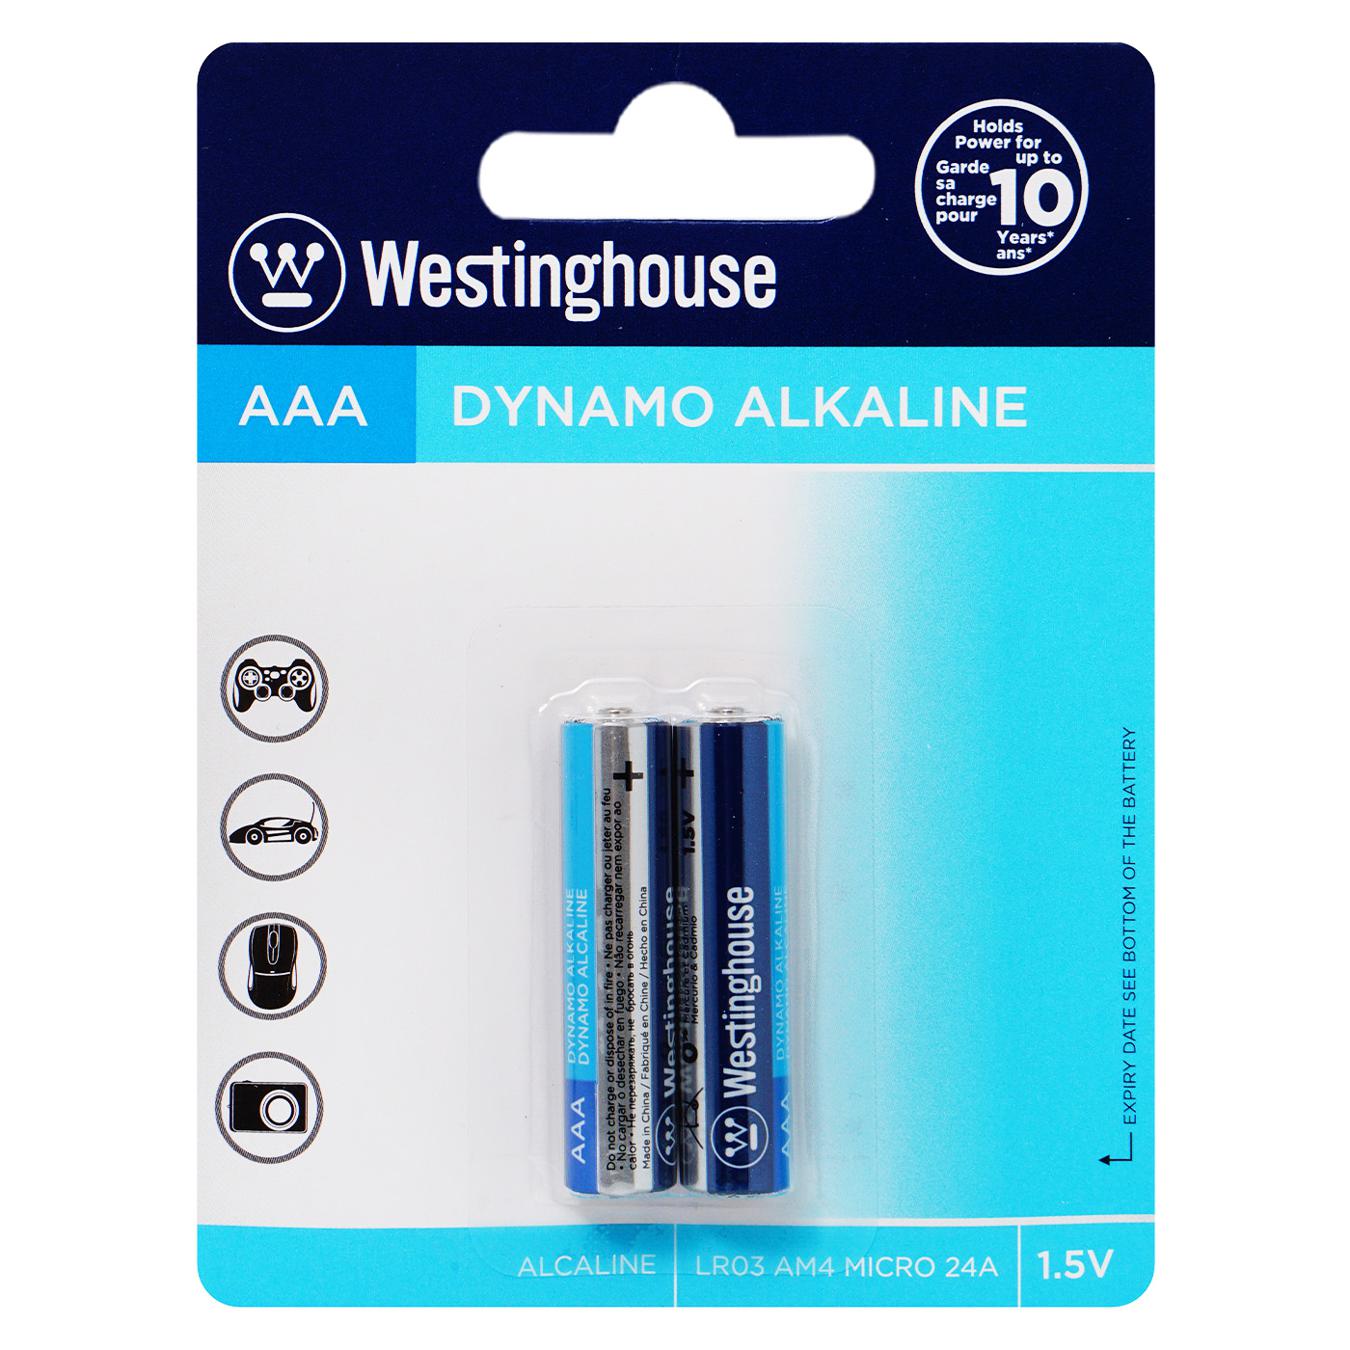 Alkaline battery Westinghouse Dynamo Alkaline AAA/LR03 2 pcs